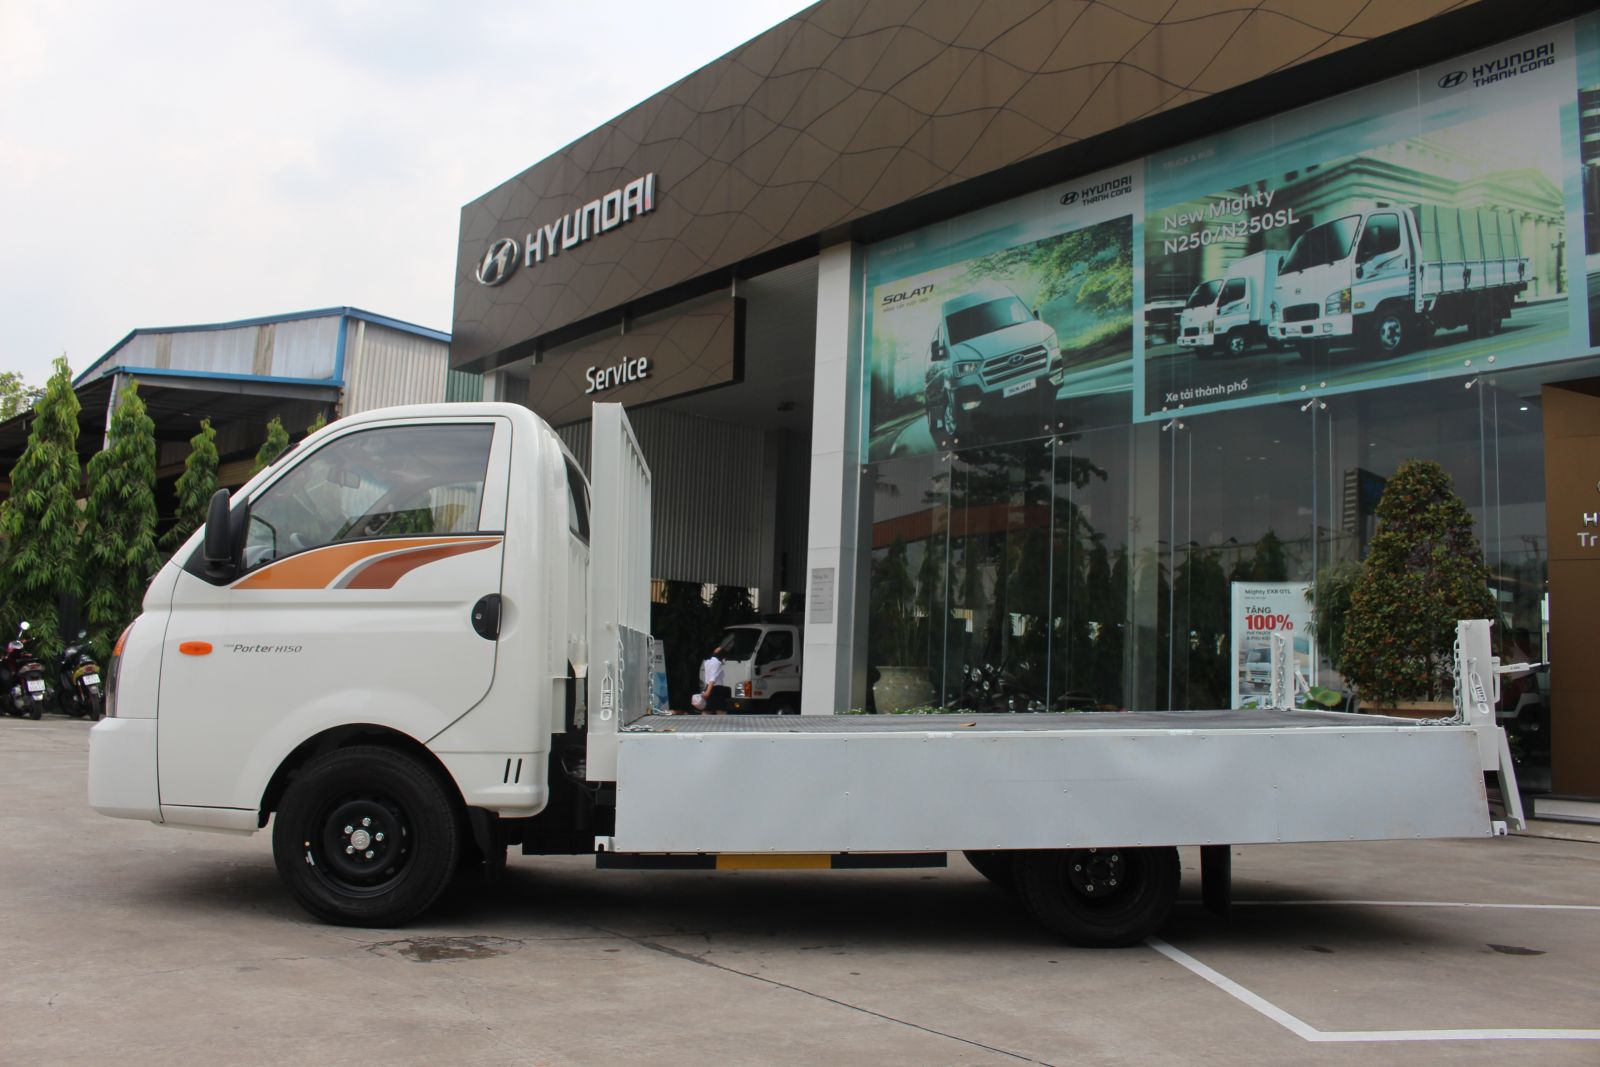 Xe tải Hyundai H150 đang được phân phối tại Hyundai Nguyên Gia Phát với mức giá vô cùng cạnh tranh